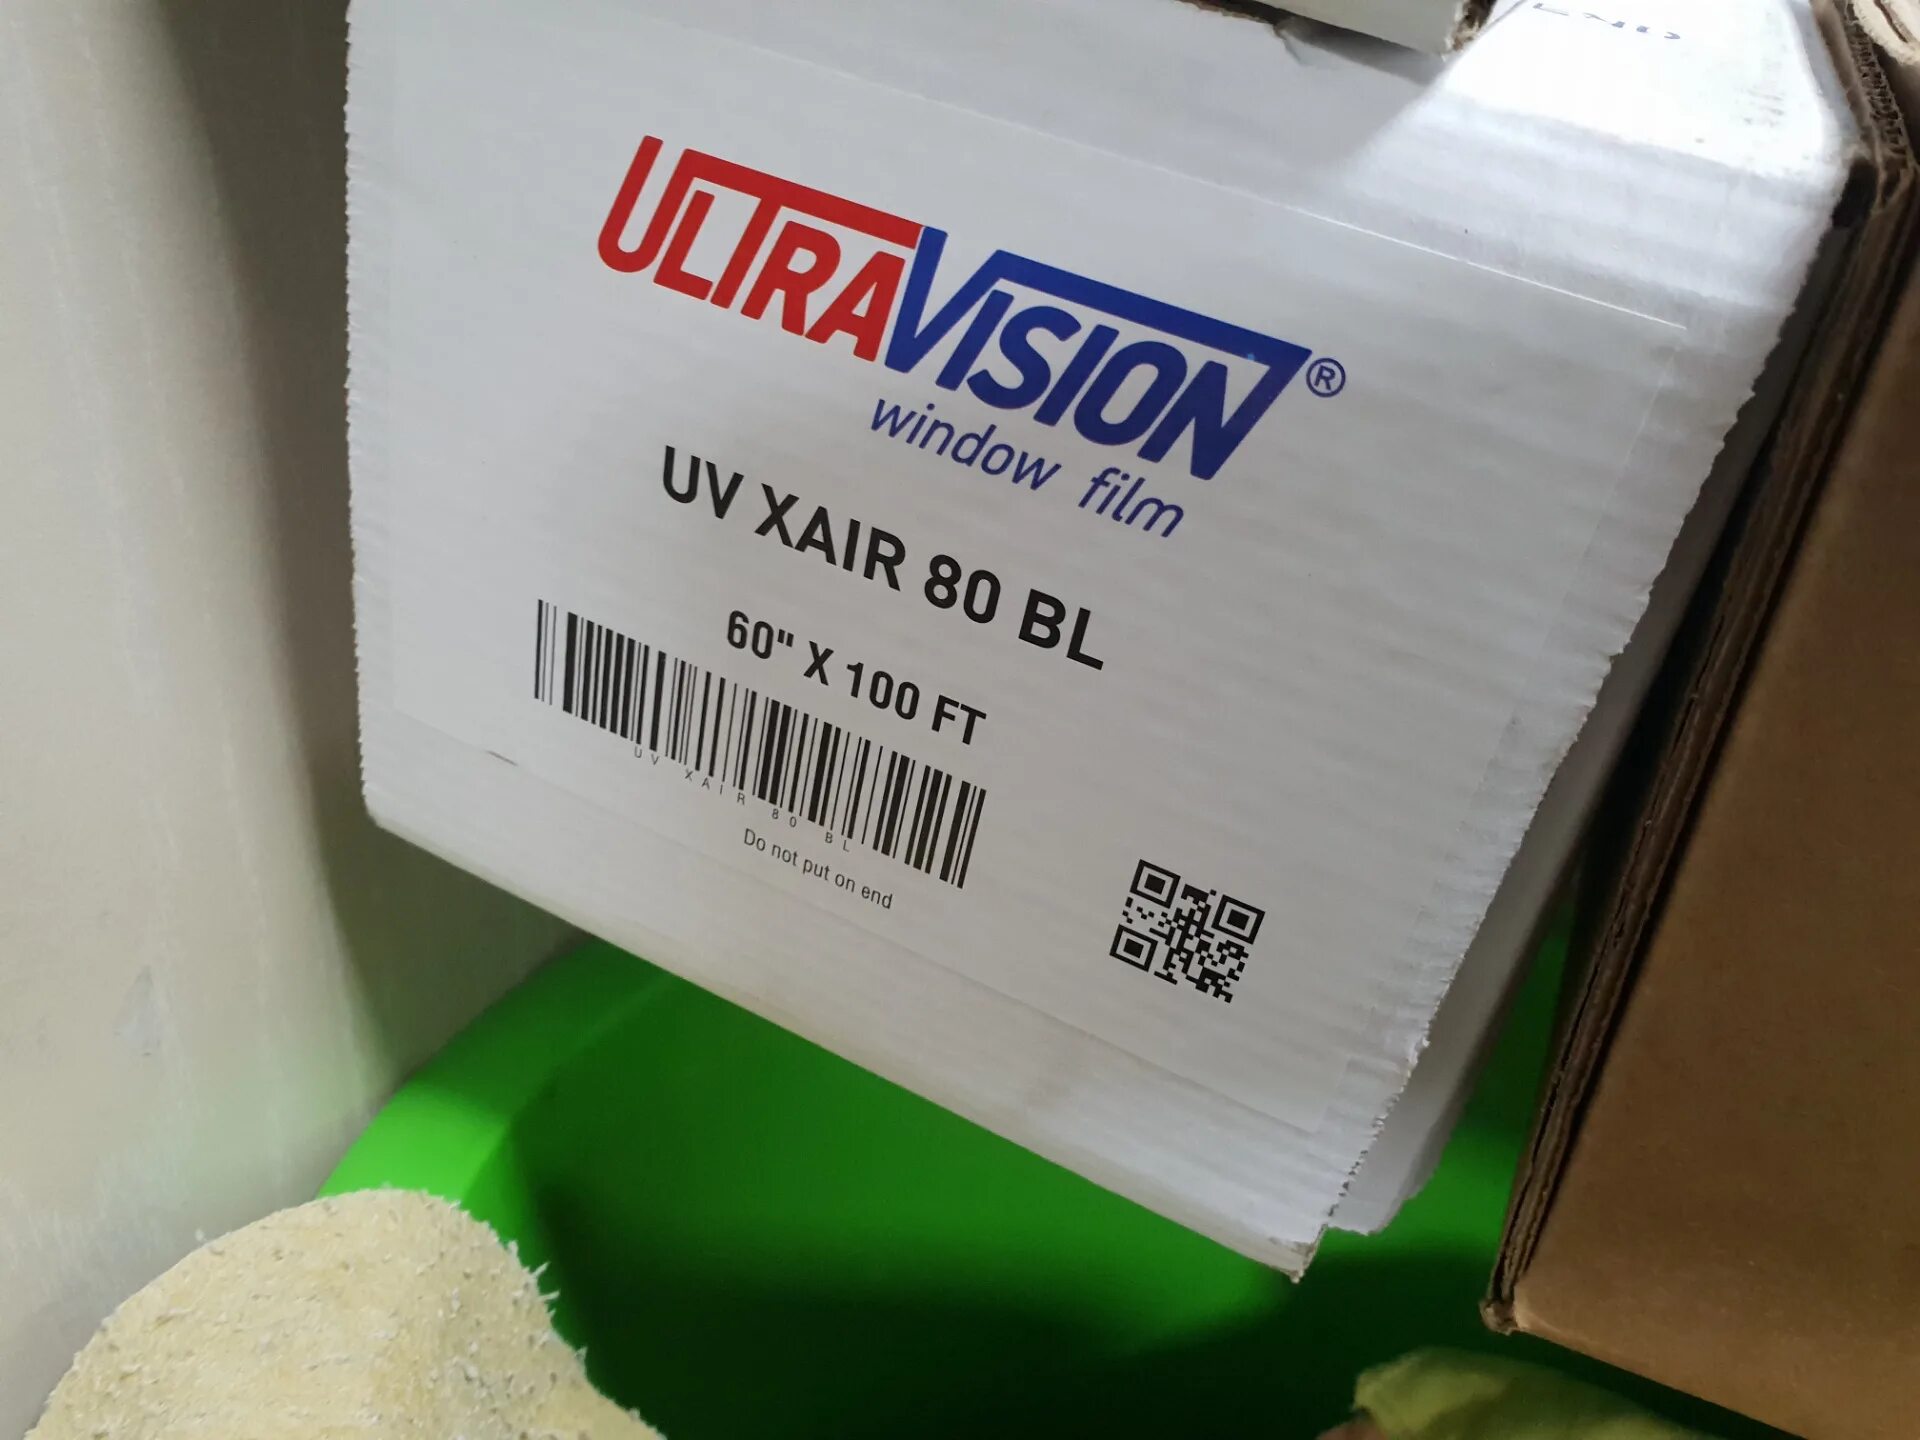 Ultra Vision XAIR 80 BL. UV XAIR 80 BL. Ultra Vision 80 Blue. Плёнка атермальная Ultra Vision XAIR 80.